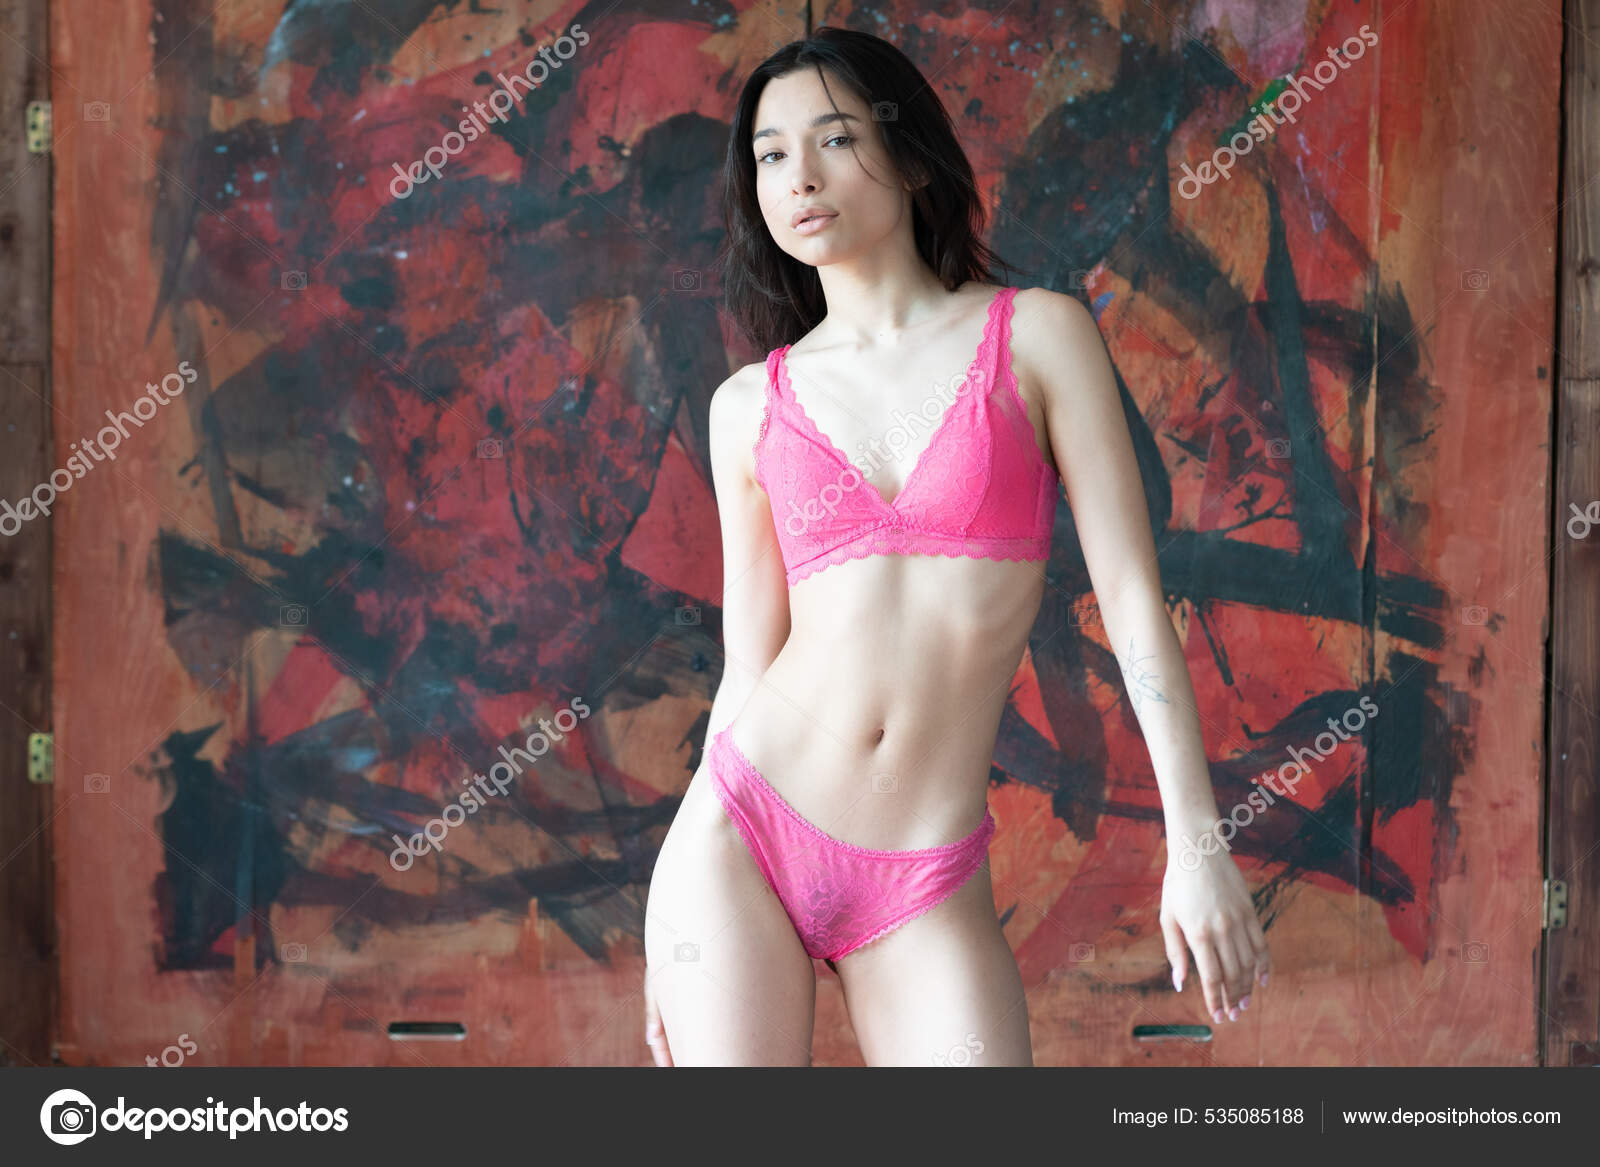 https://st.depositphotos.com/10086424/53508/i/1600/depositphotos_535085188-stock-photo-young-beautiful-woman-posing-red.jpg